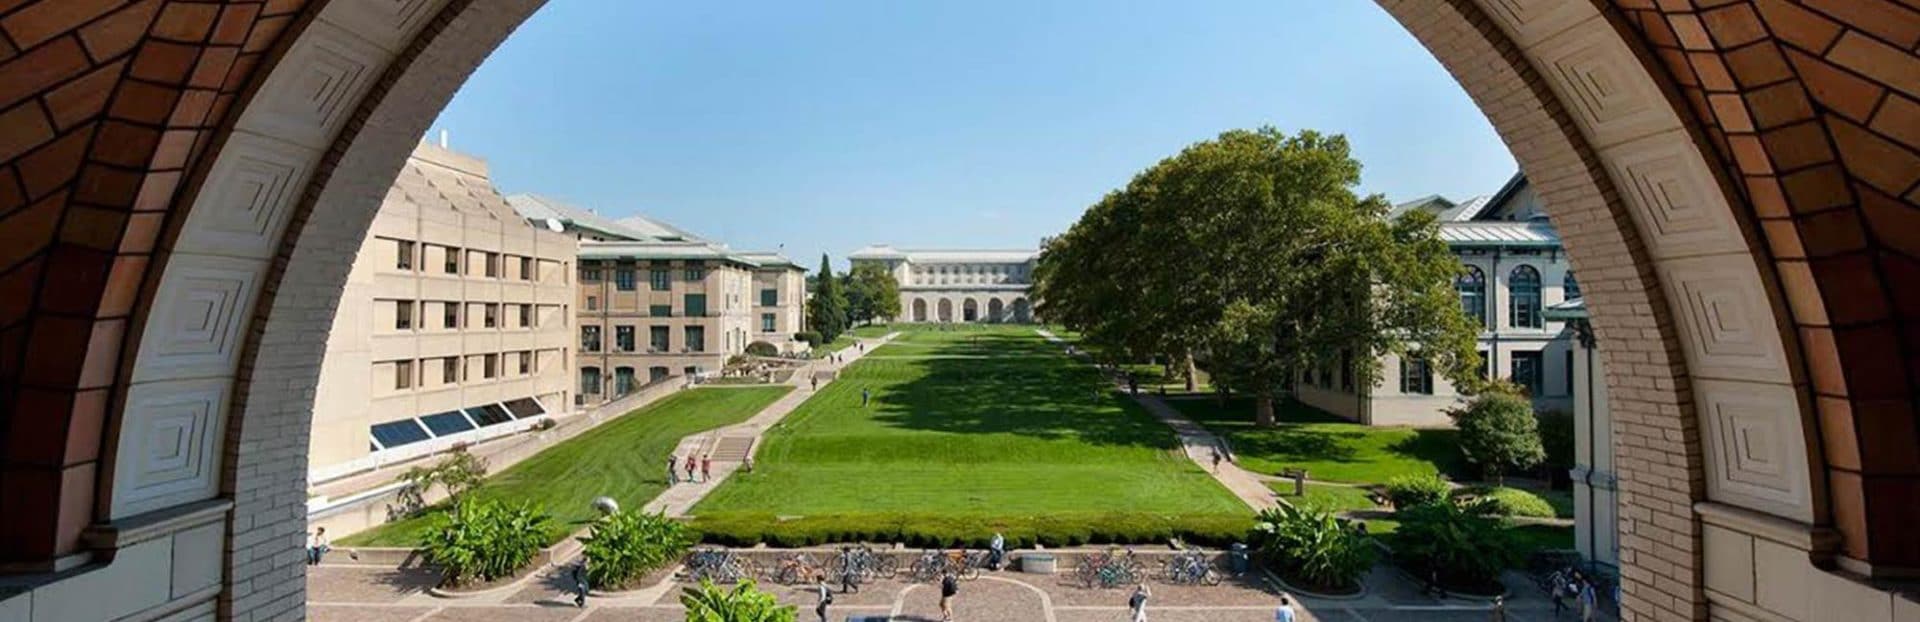 Carnegie Mellon University Acceptance Rate